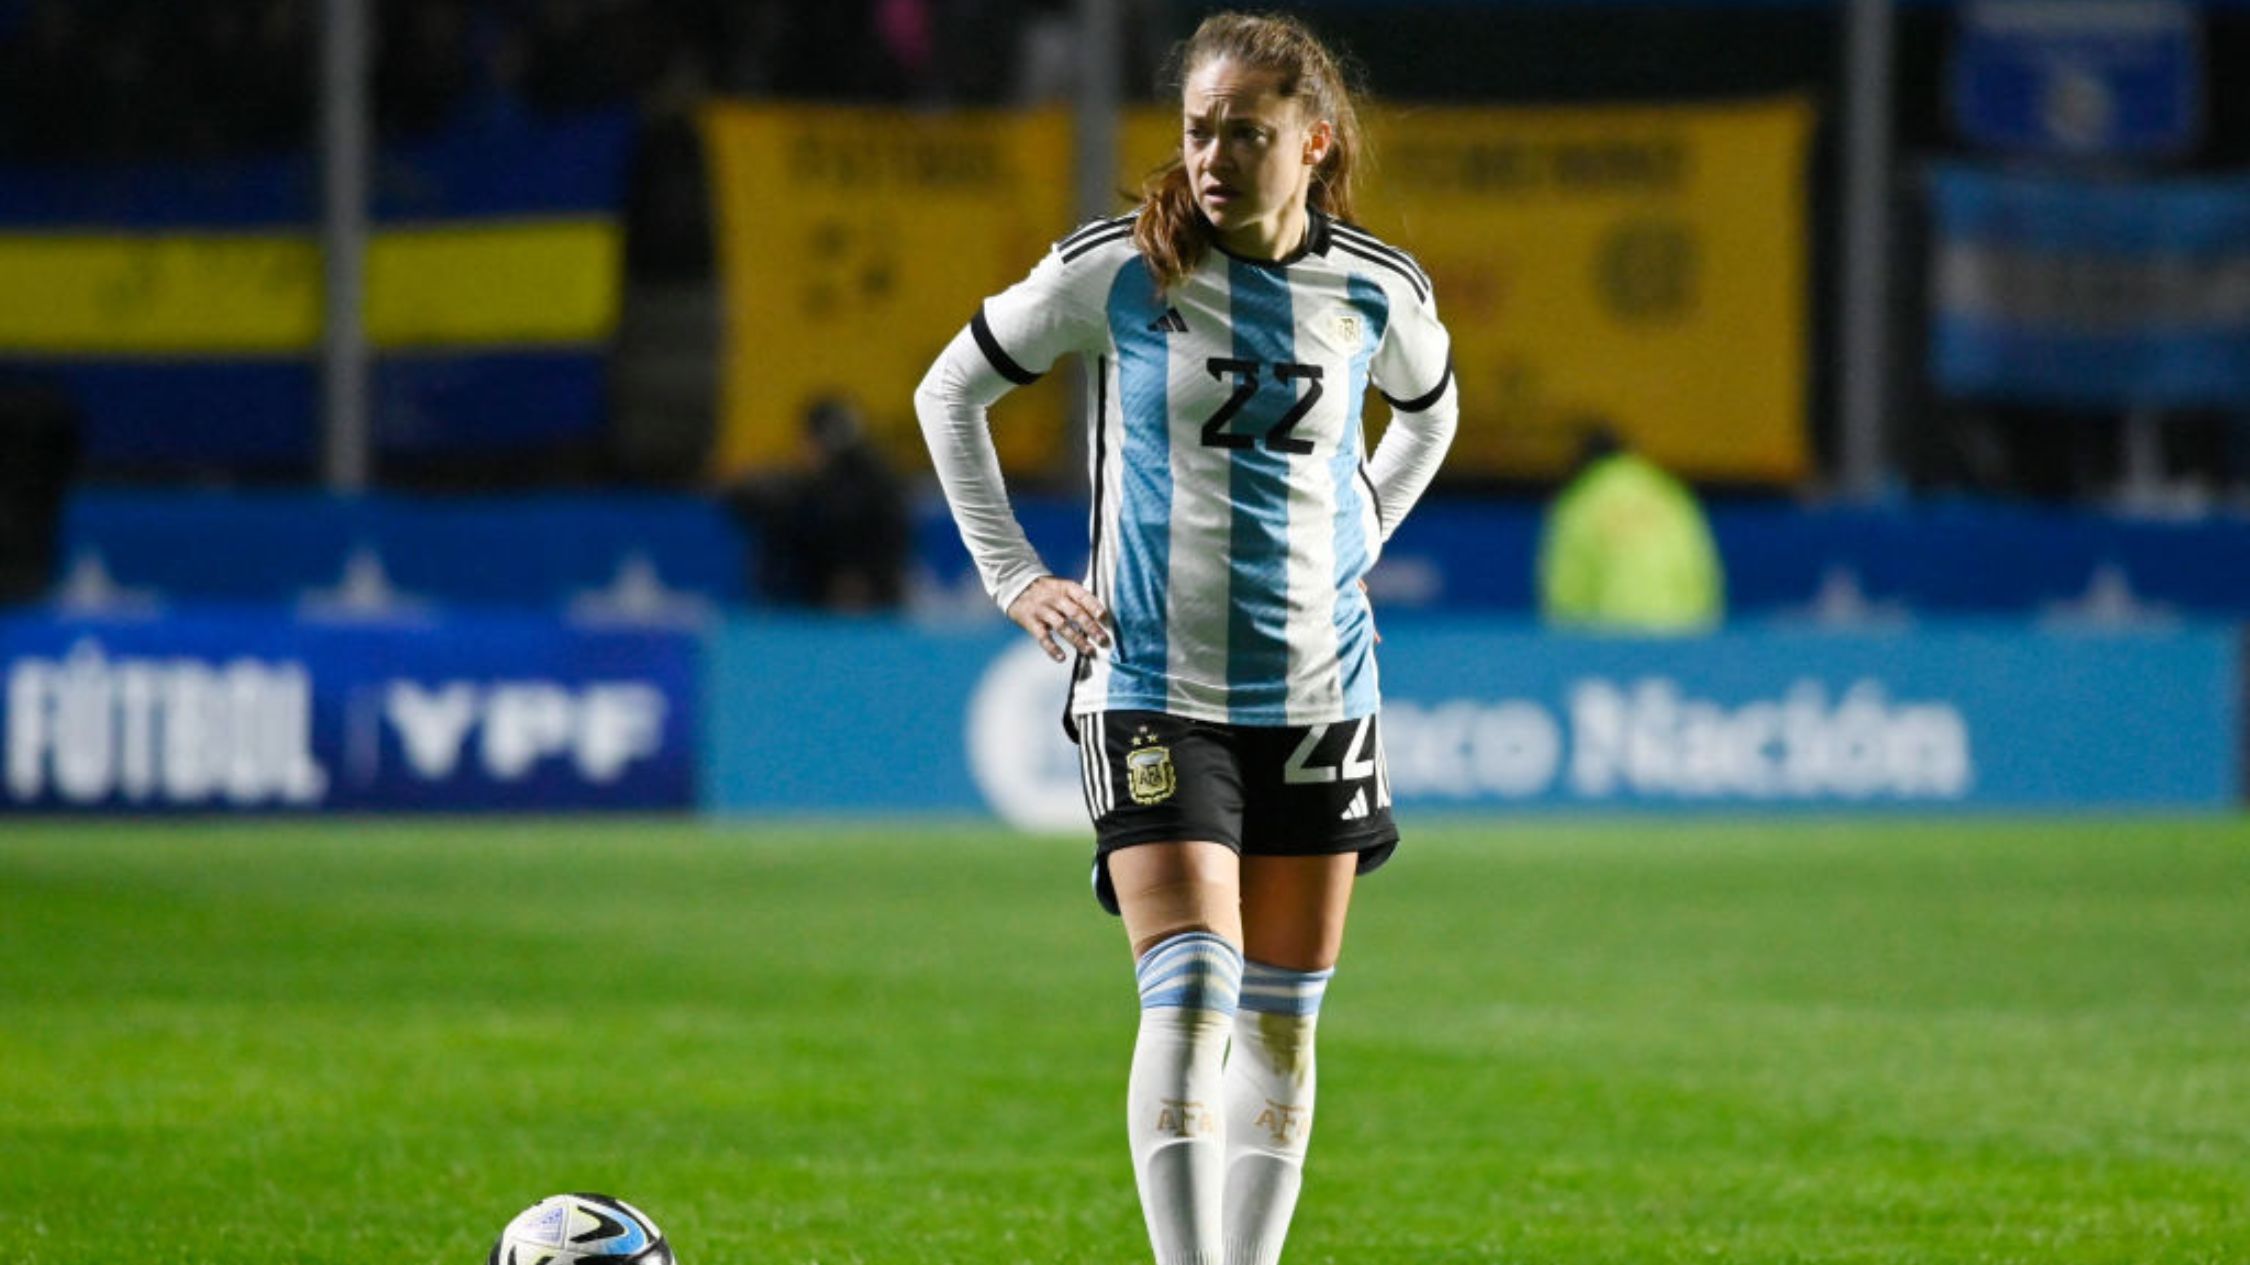 Argentina en el Mundial de Fútbol Femenino 2023: calendario, jugadoras, formación y más